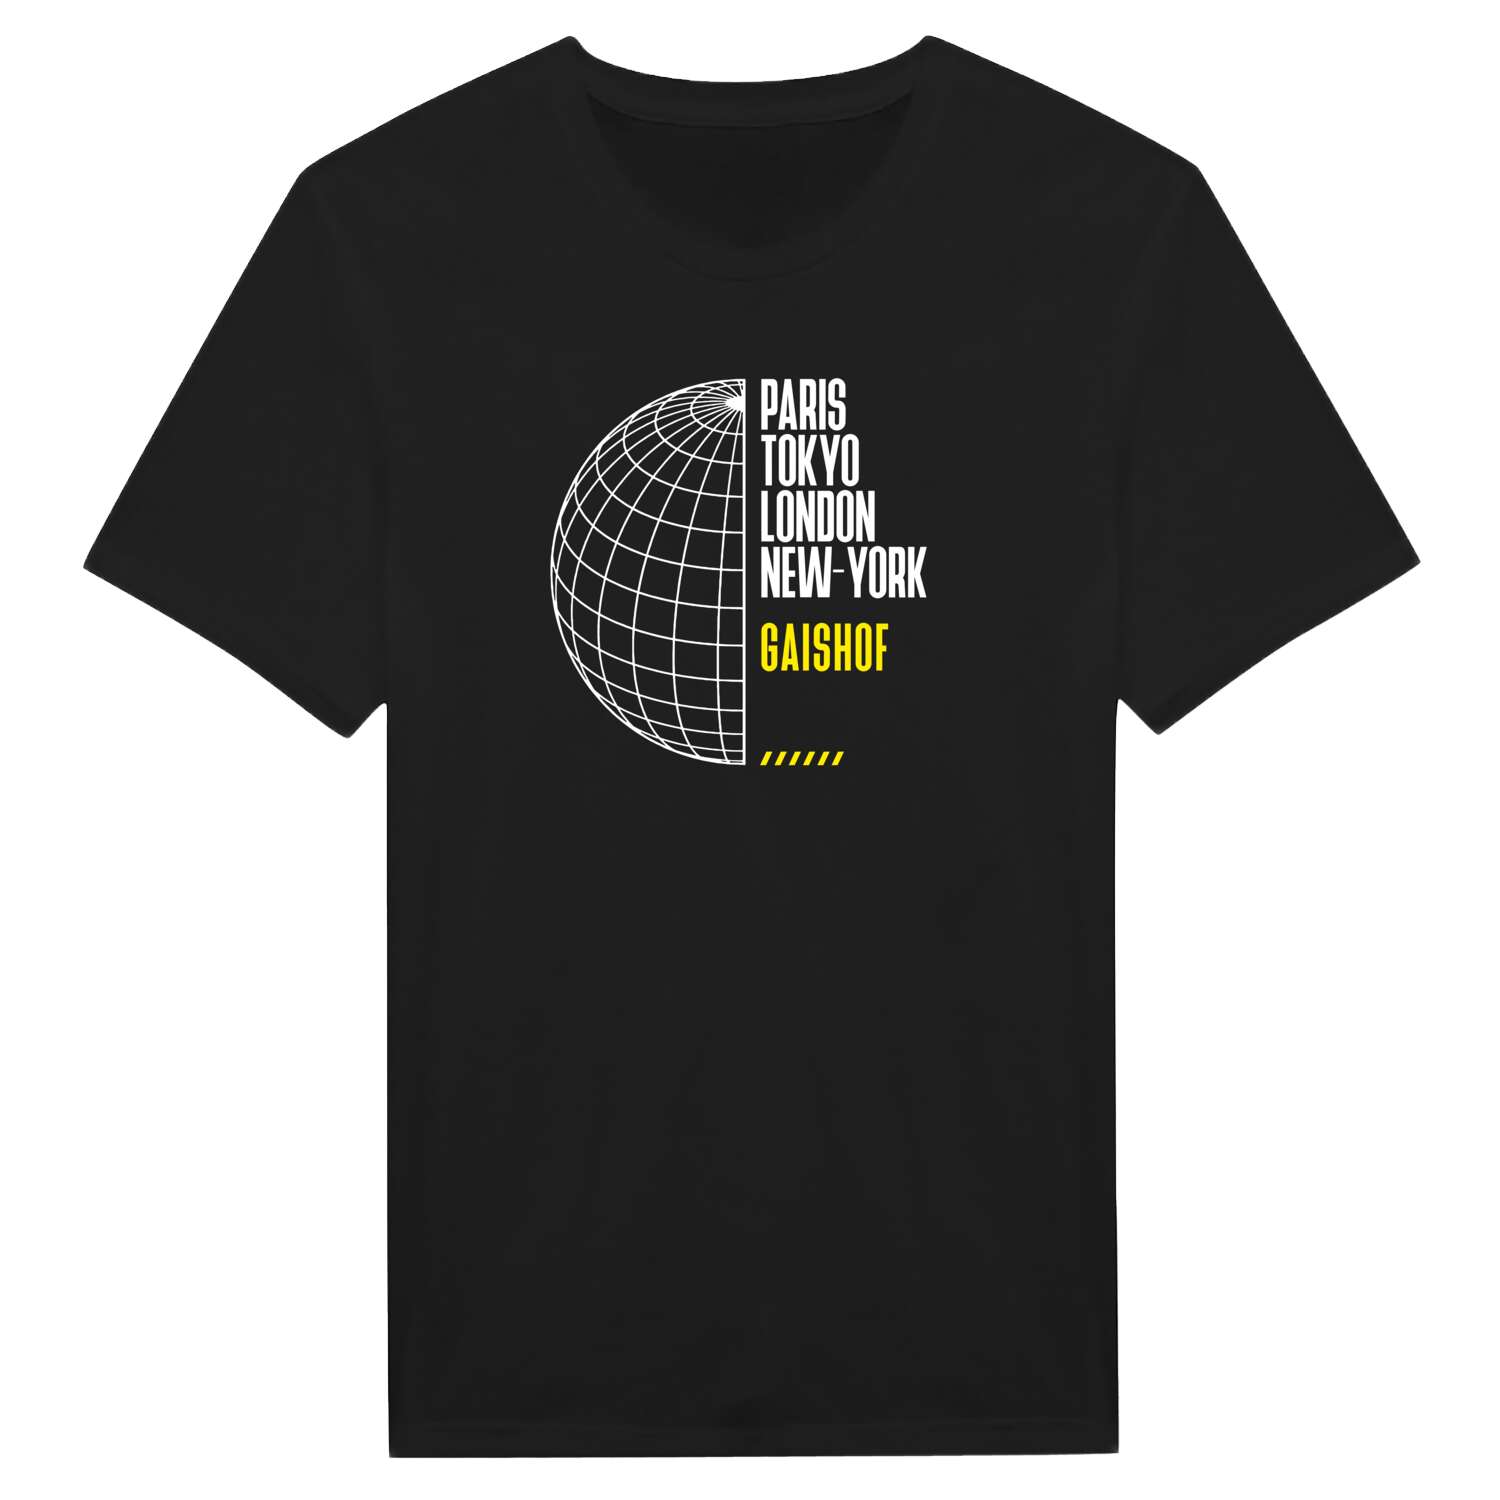 Gaishof T-Shirt »Paris Tokyo London«